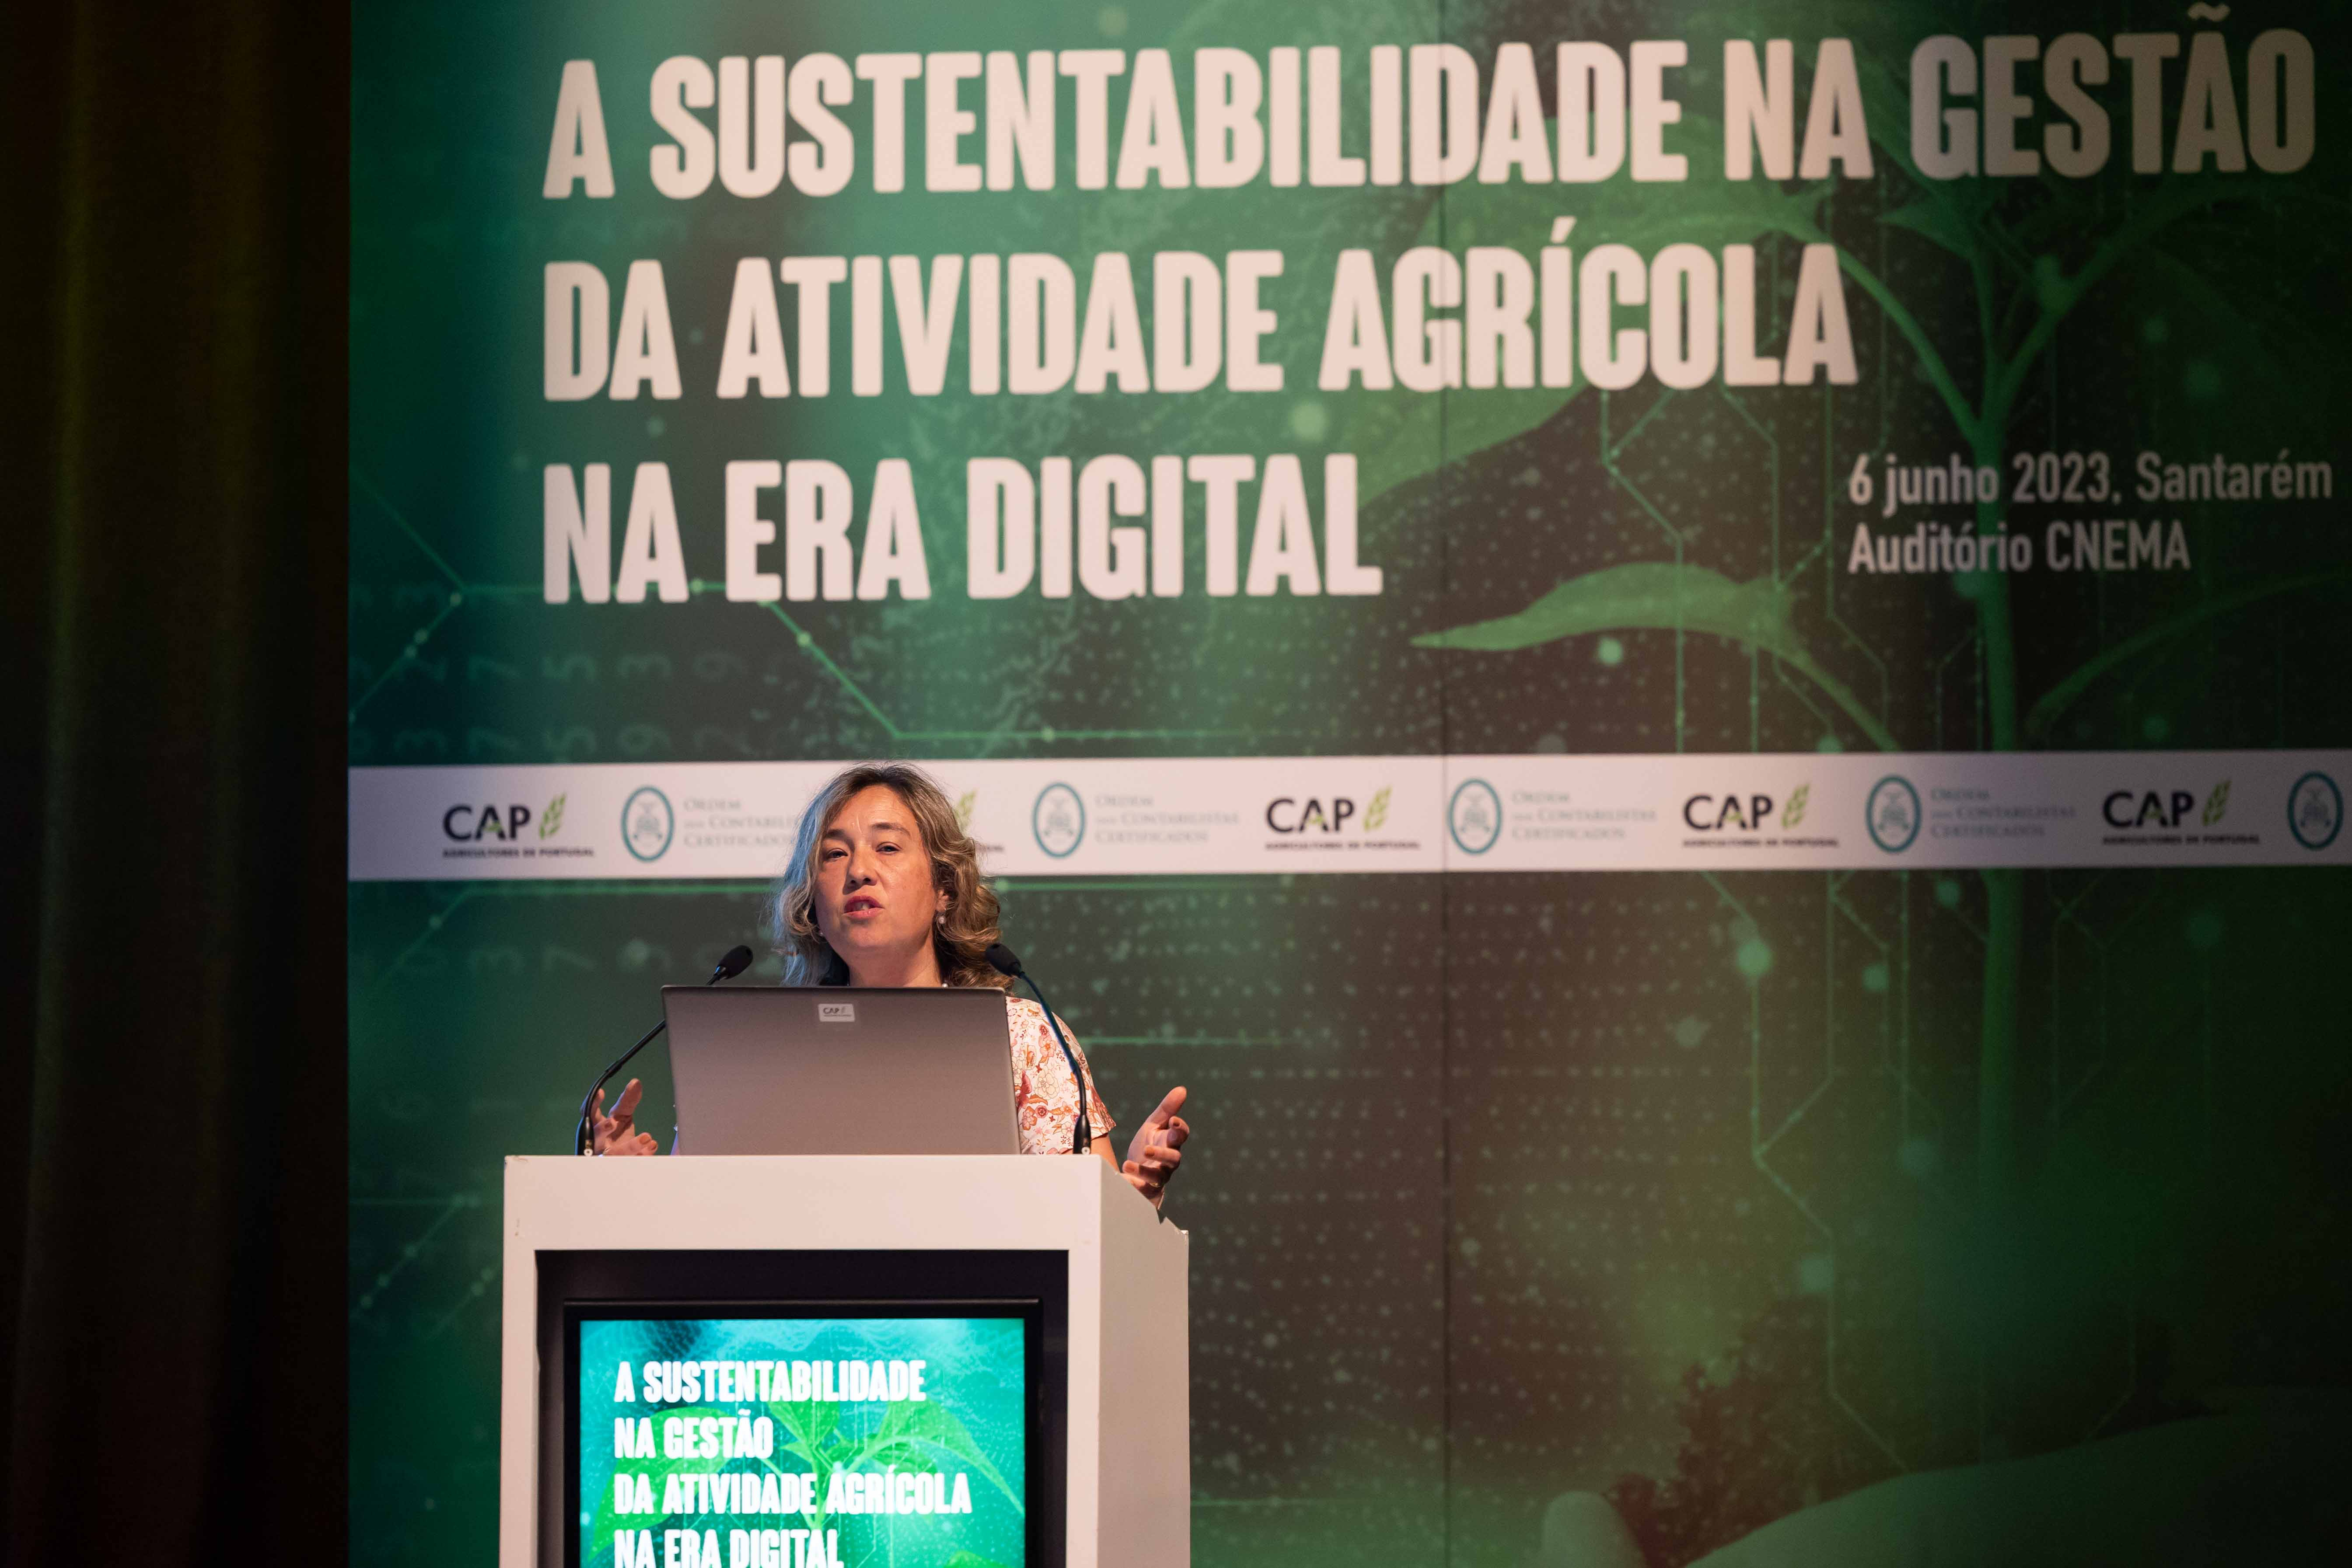 A Sustentabilidade na Gestão da Atividade Agrícola na Era Digital